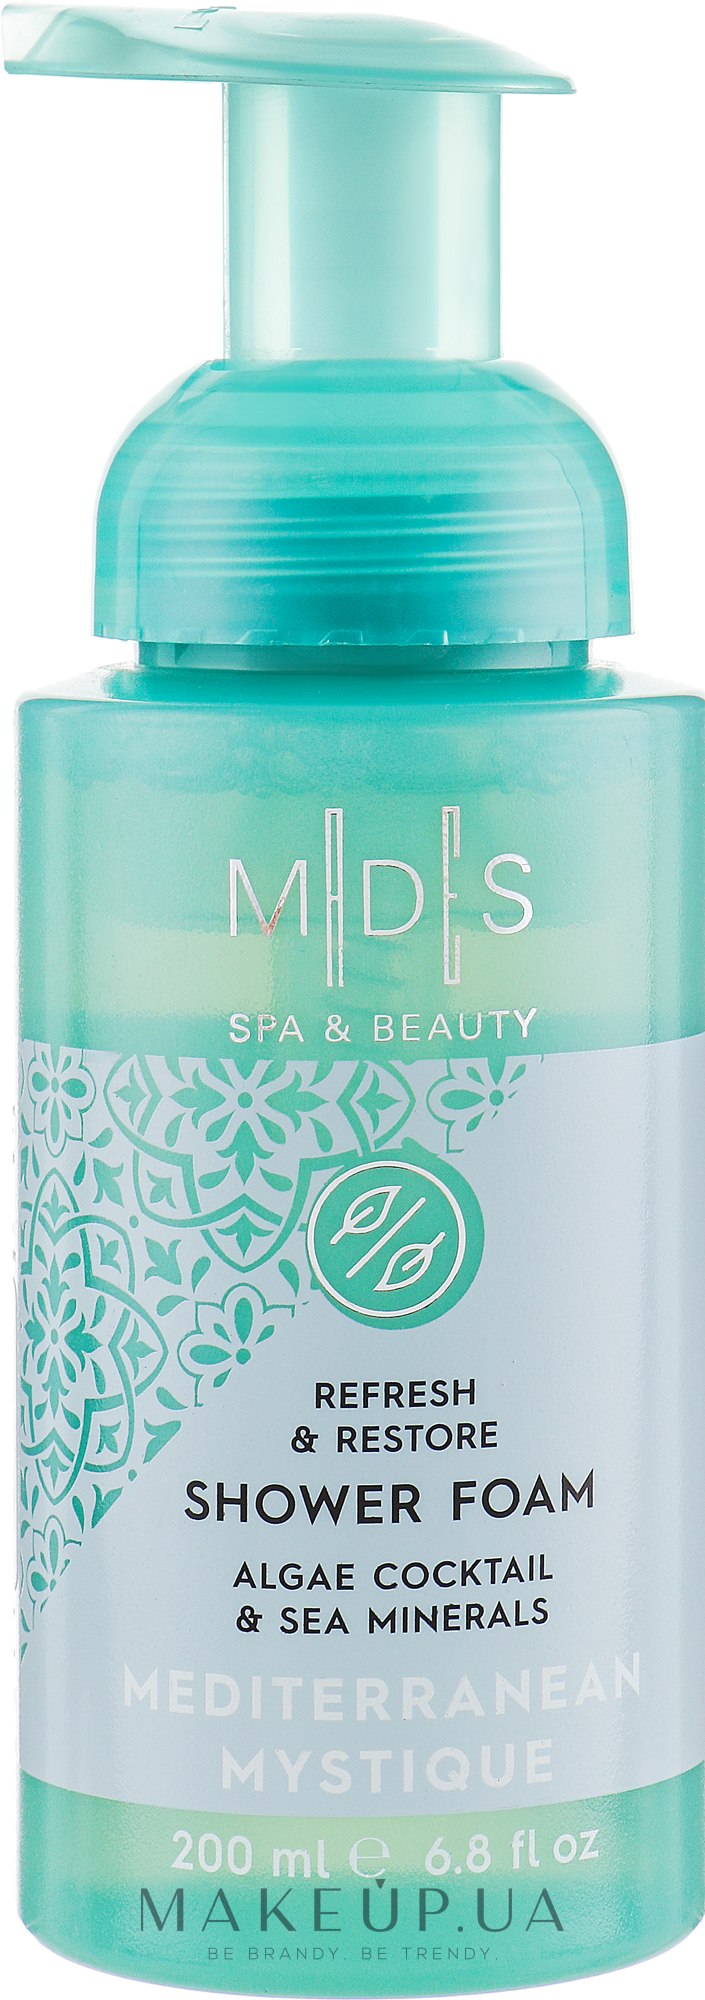 Пінка для душу "Таємниці Середземномор'я" - MDS Spa&Beauty Mediterranean Mystique Shower Foam — фото 200ml